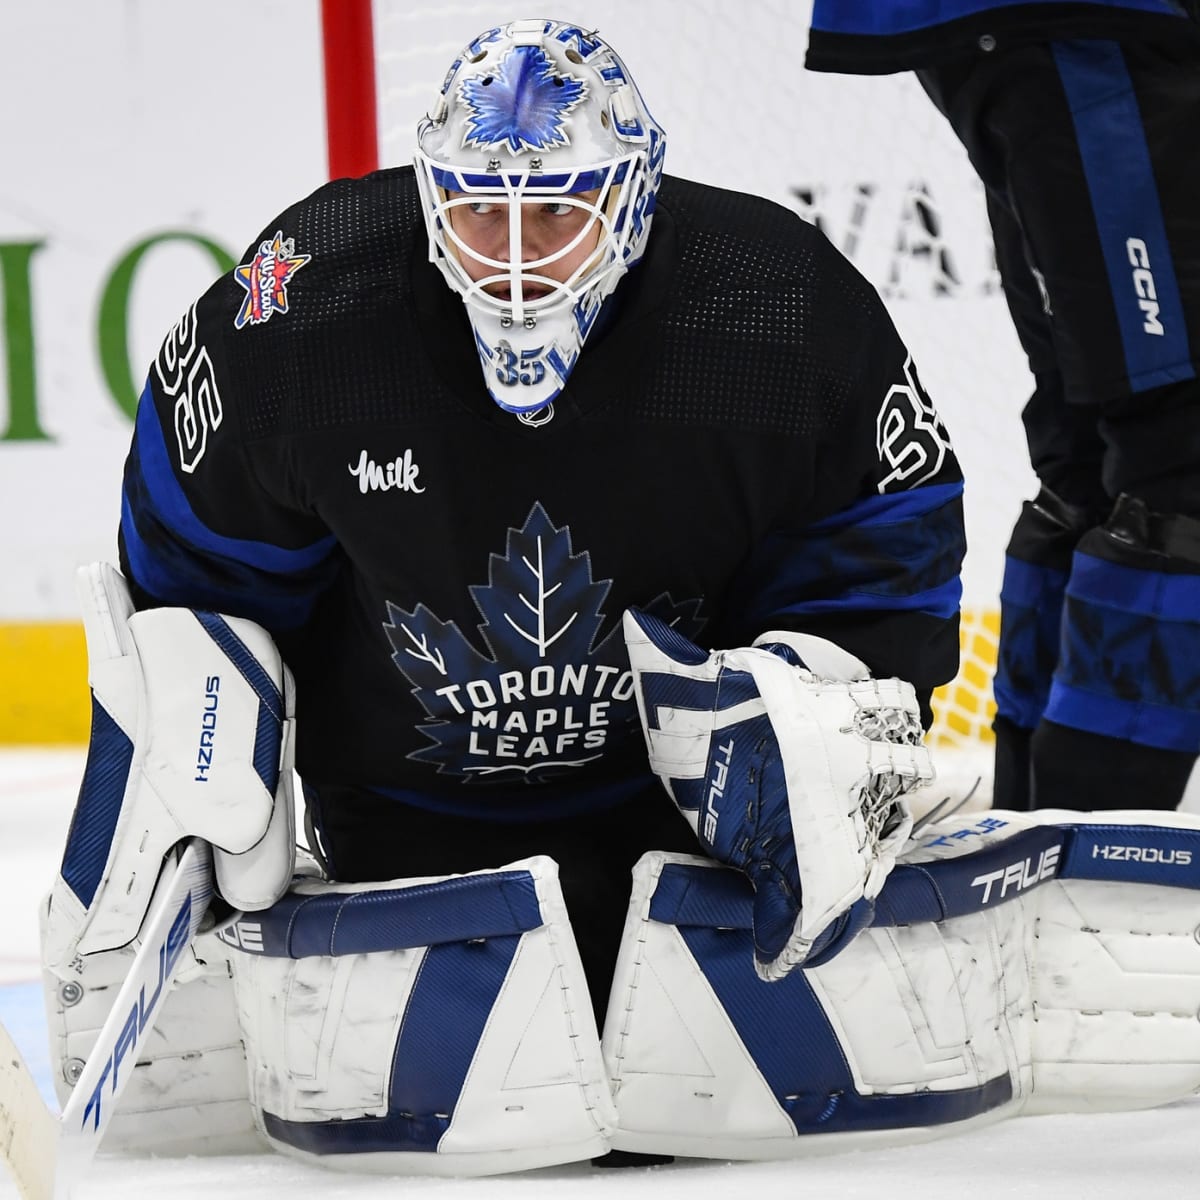 Maple Leafs activate goaltender Ilya Samsonov